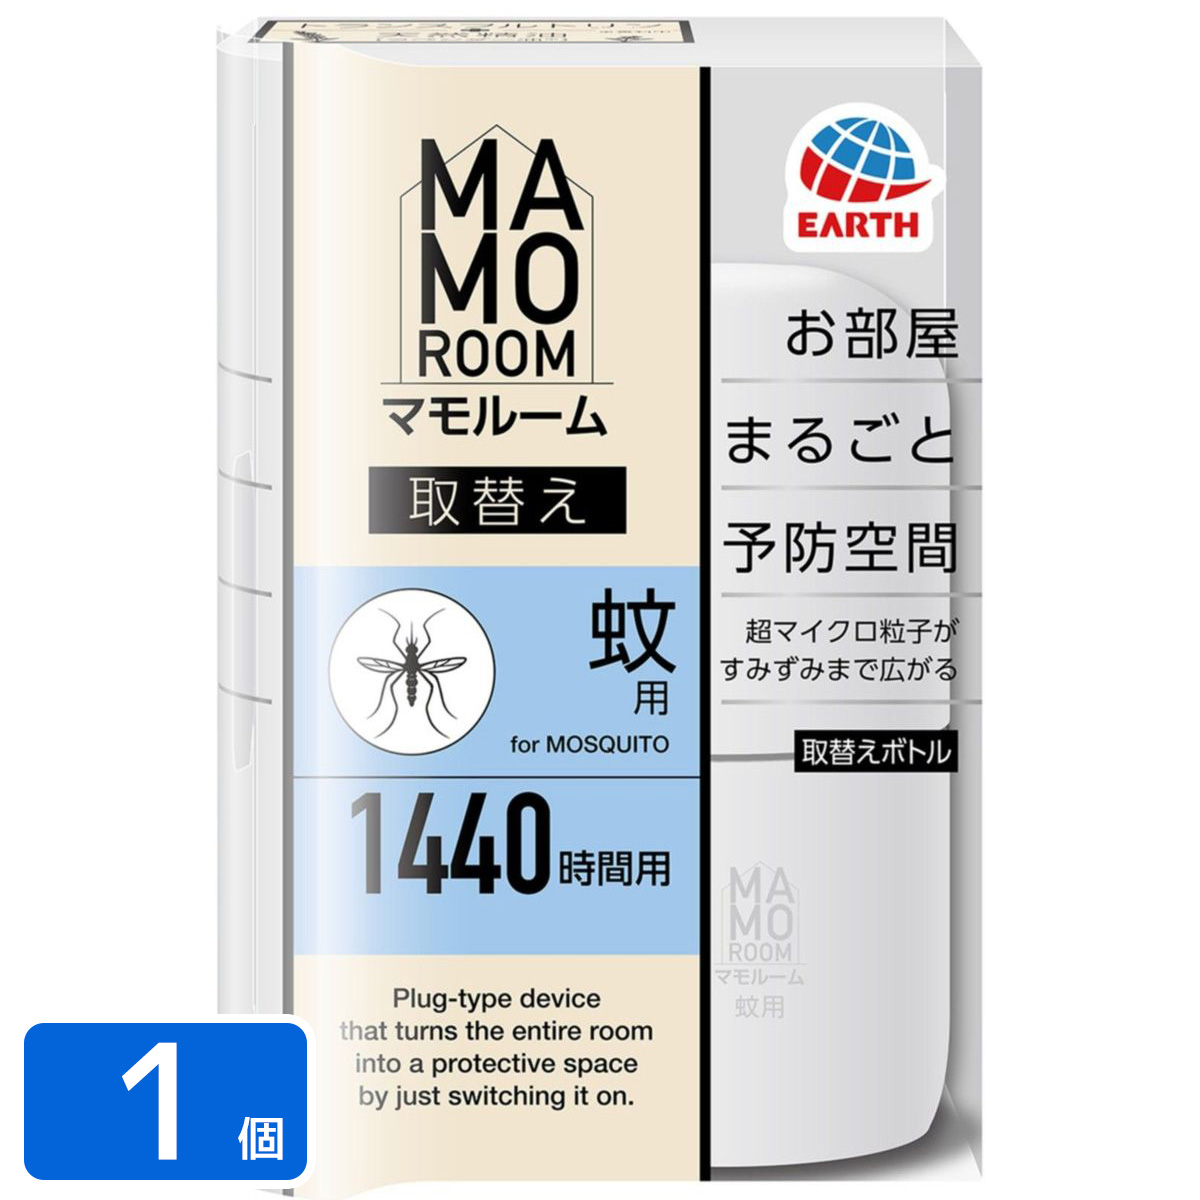 マモルーム 蚊用 1440時間用 取替え 殺虫剤 45ml